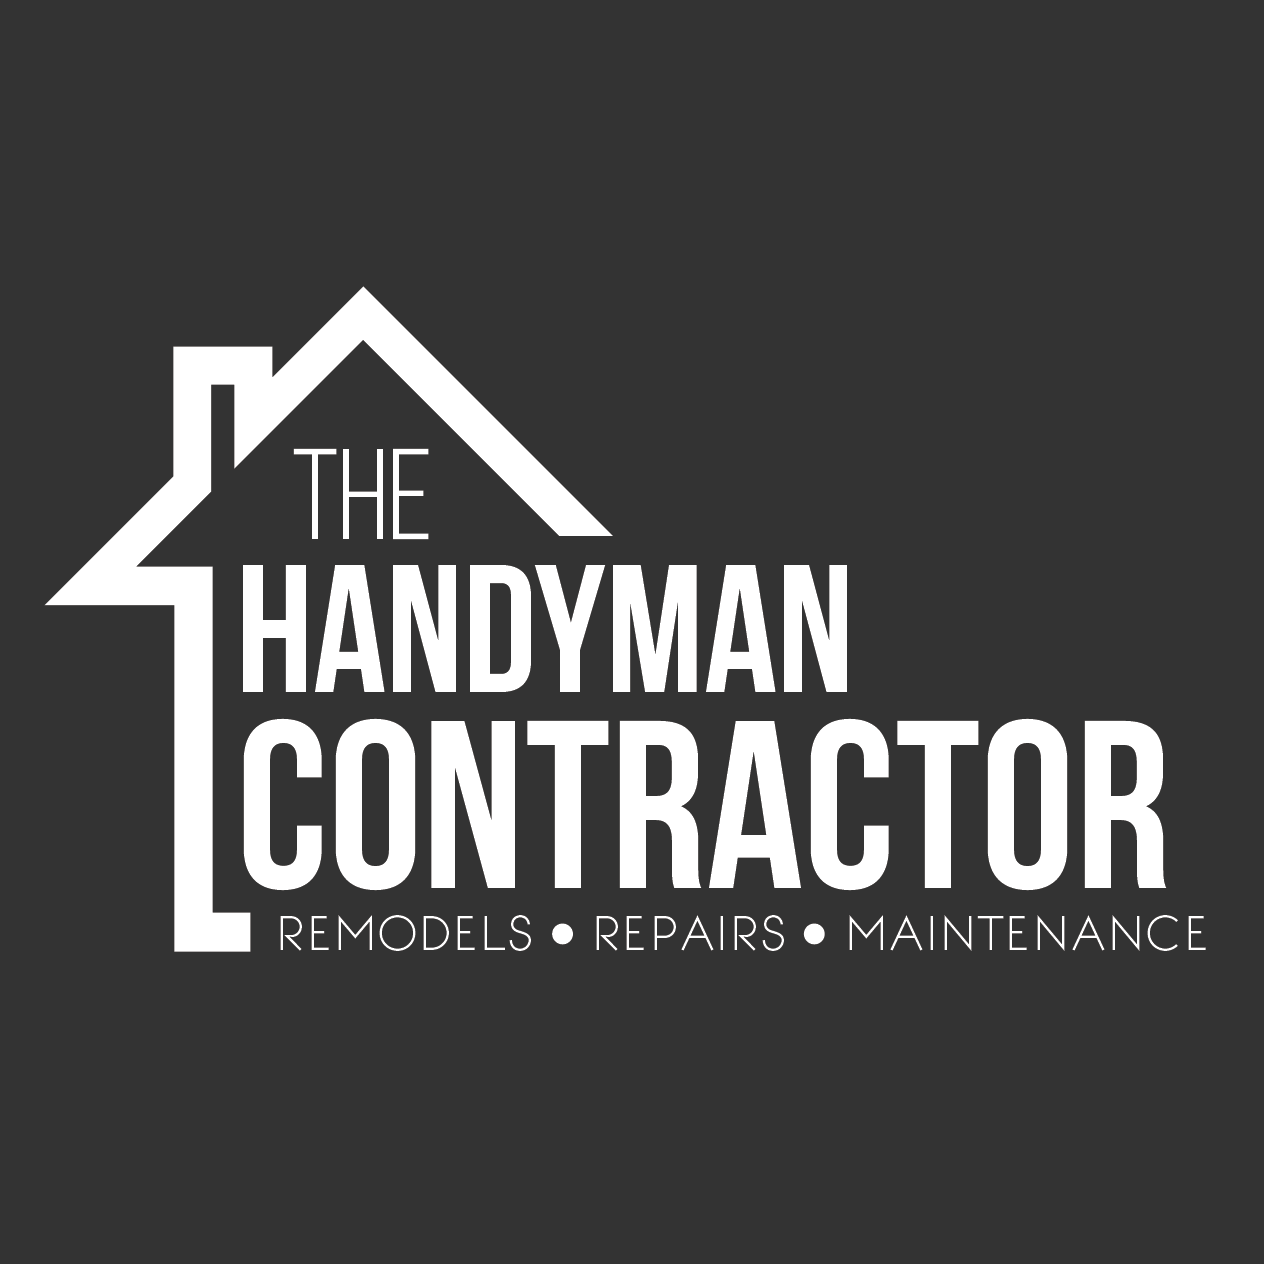 Home Construction Company Logo - Logo design for home improvement company. #logo #contractor #design ...